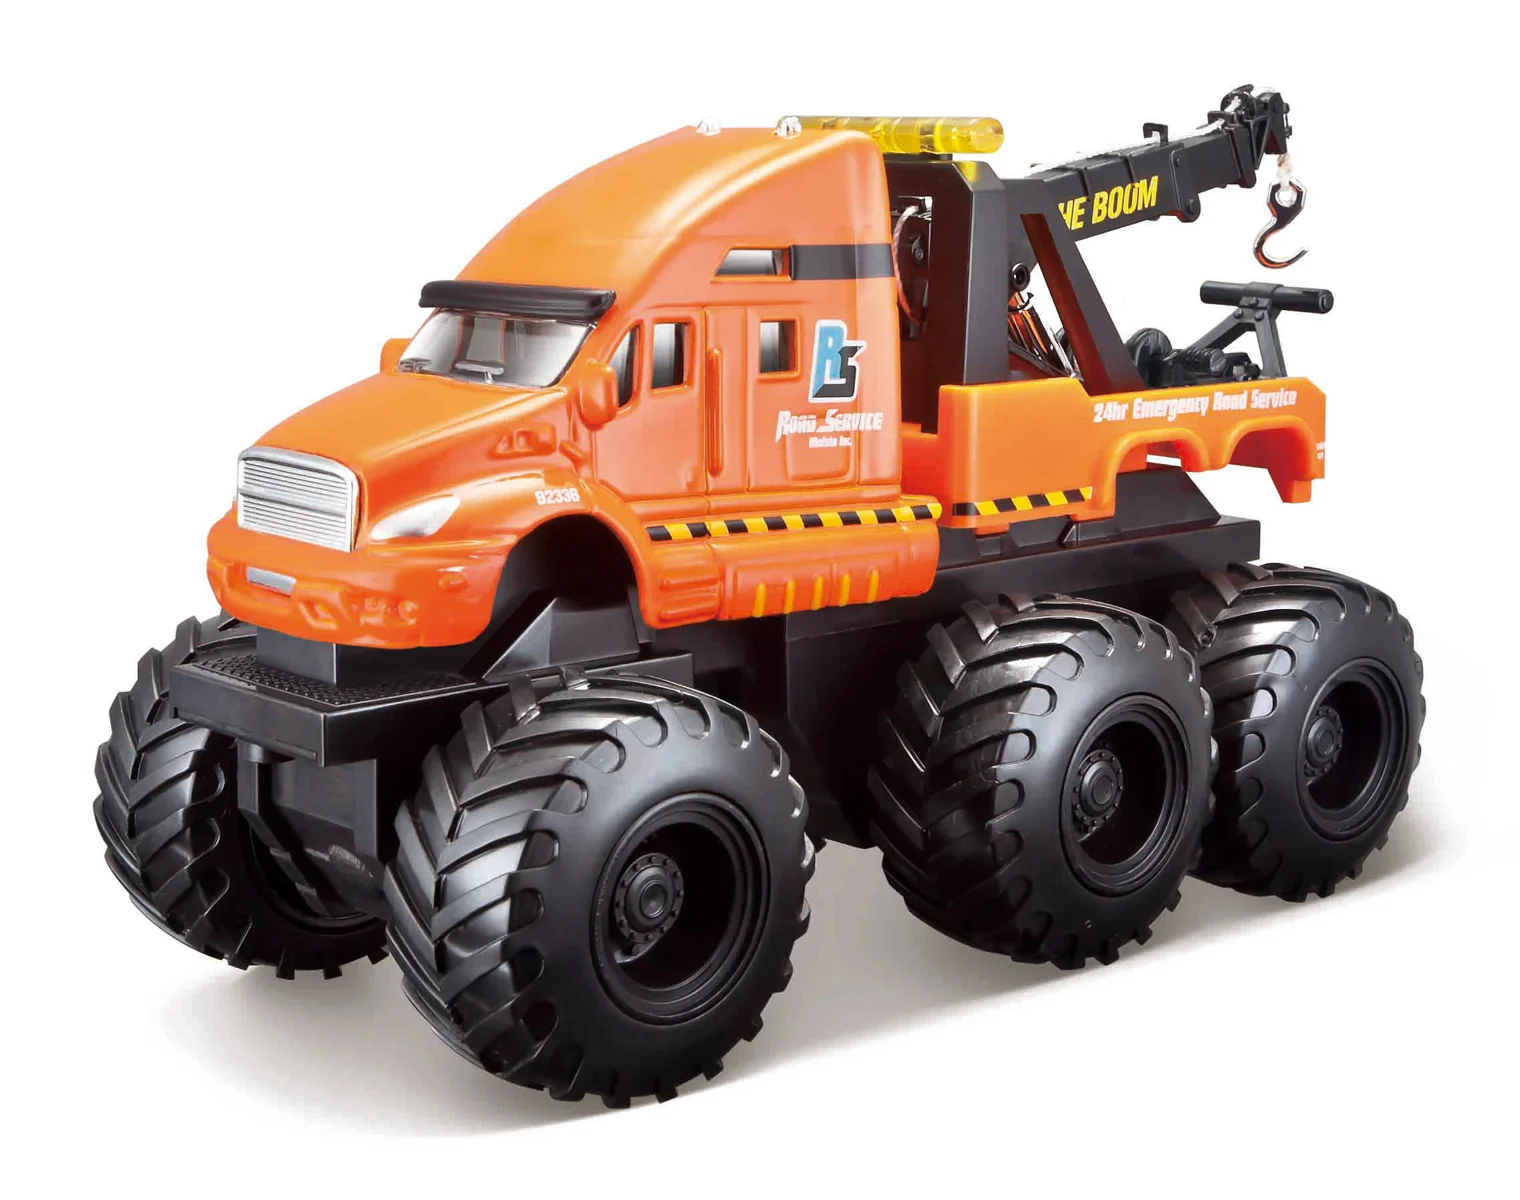 Maisto - Builder Zone Quarry monsters, užitkové vozy, odtahový vůz